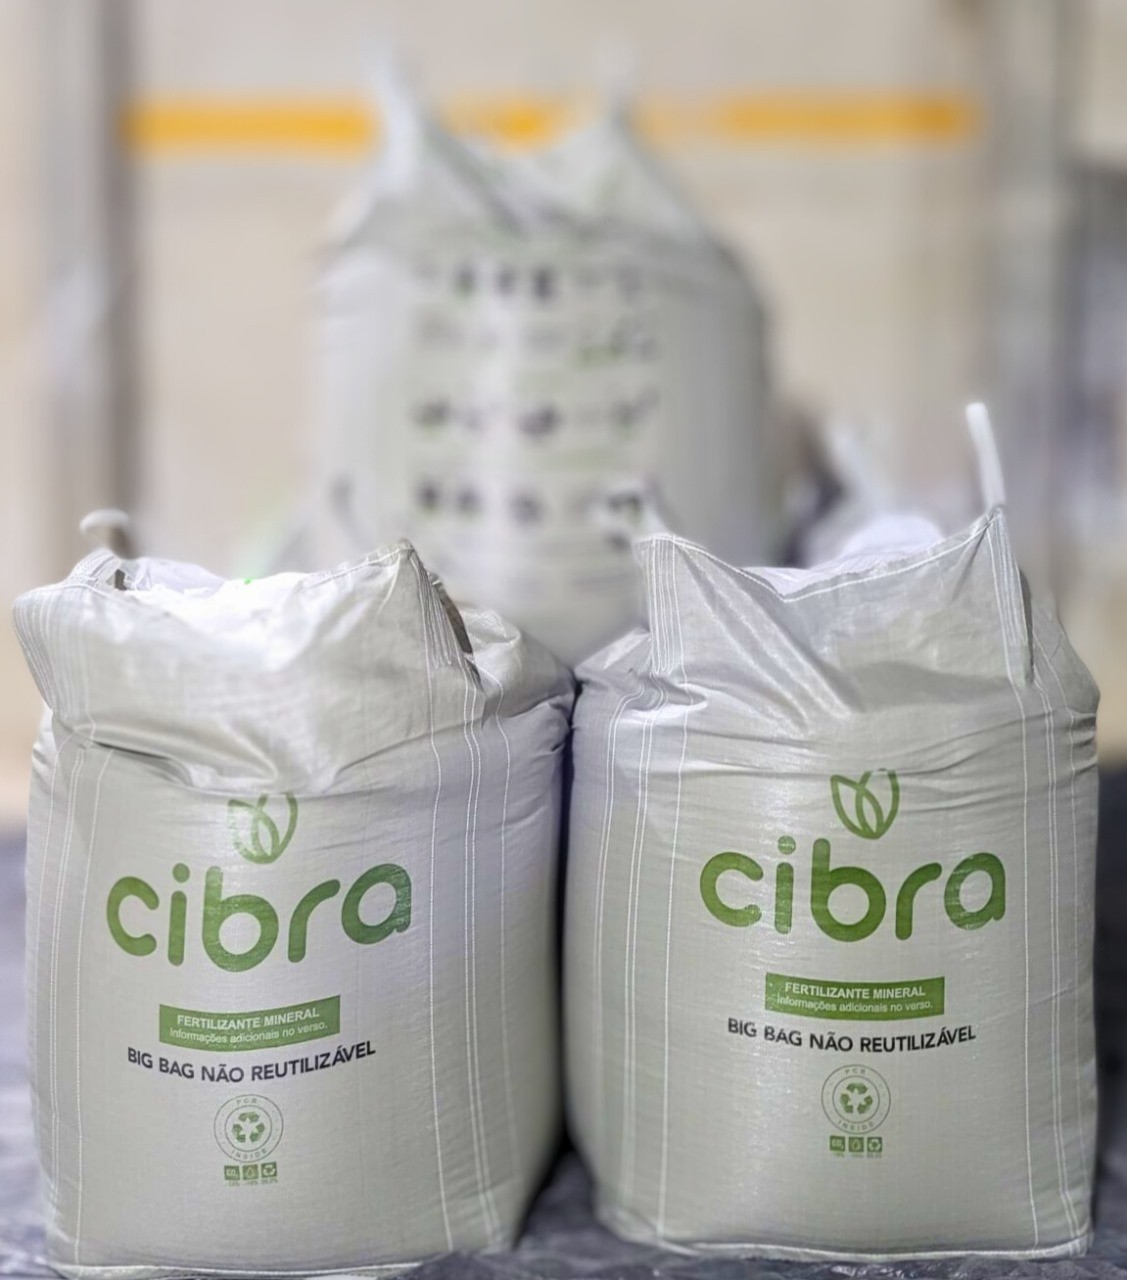 Cibra adota embalagem que reduz risco de adulteração e roubo de fertilizantes